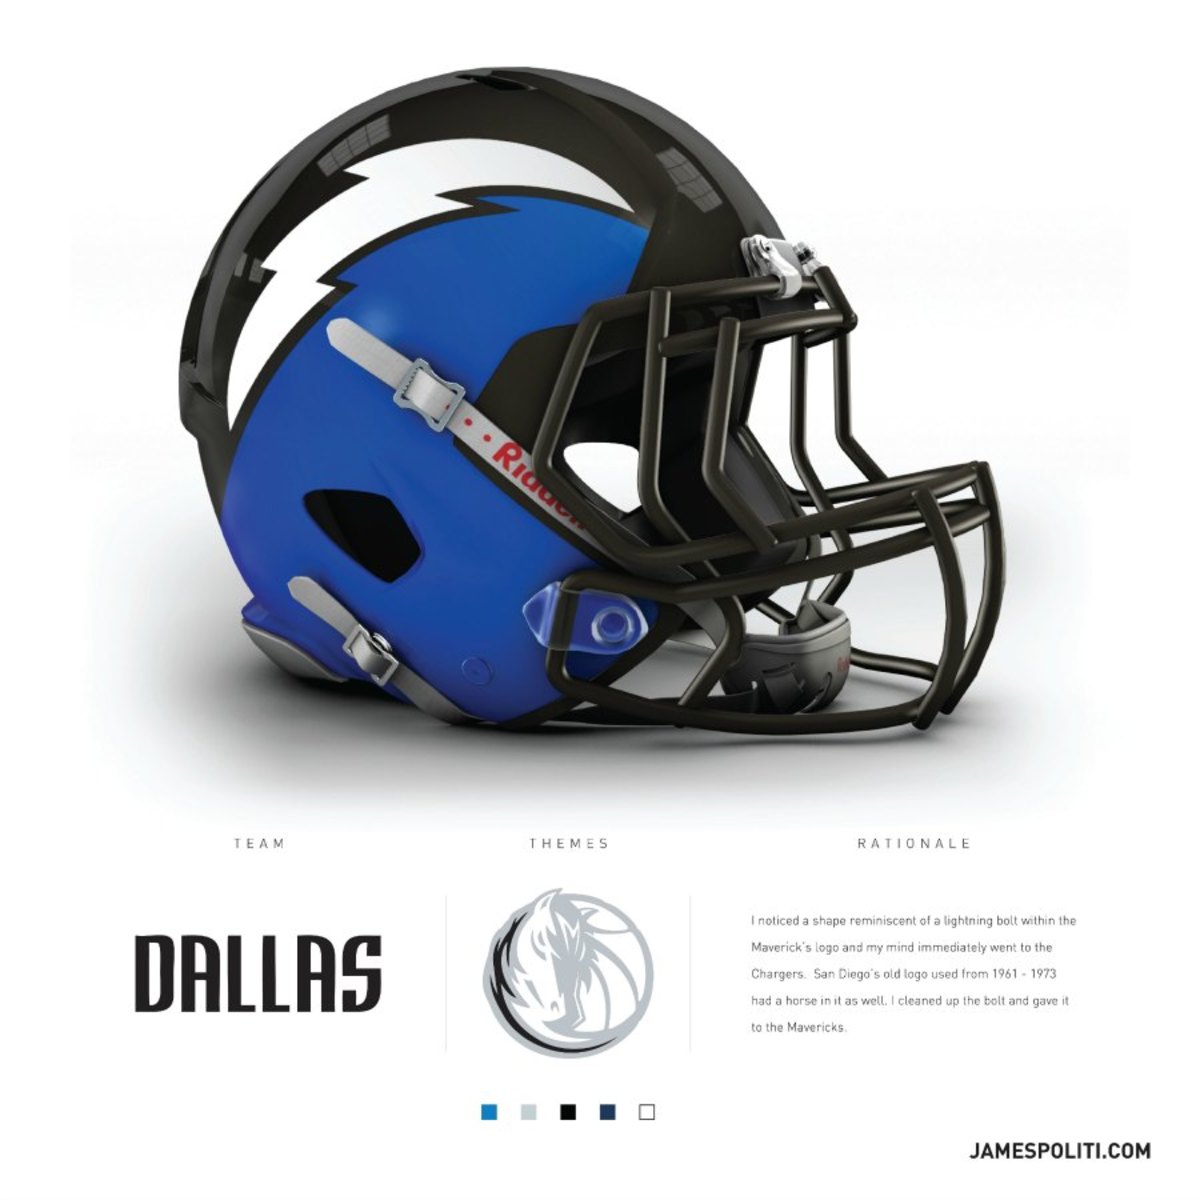 Dallas-Mavericks-nba-helmet.jpg